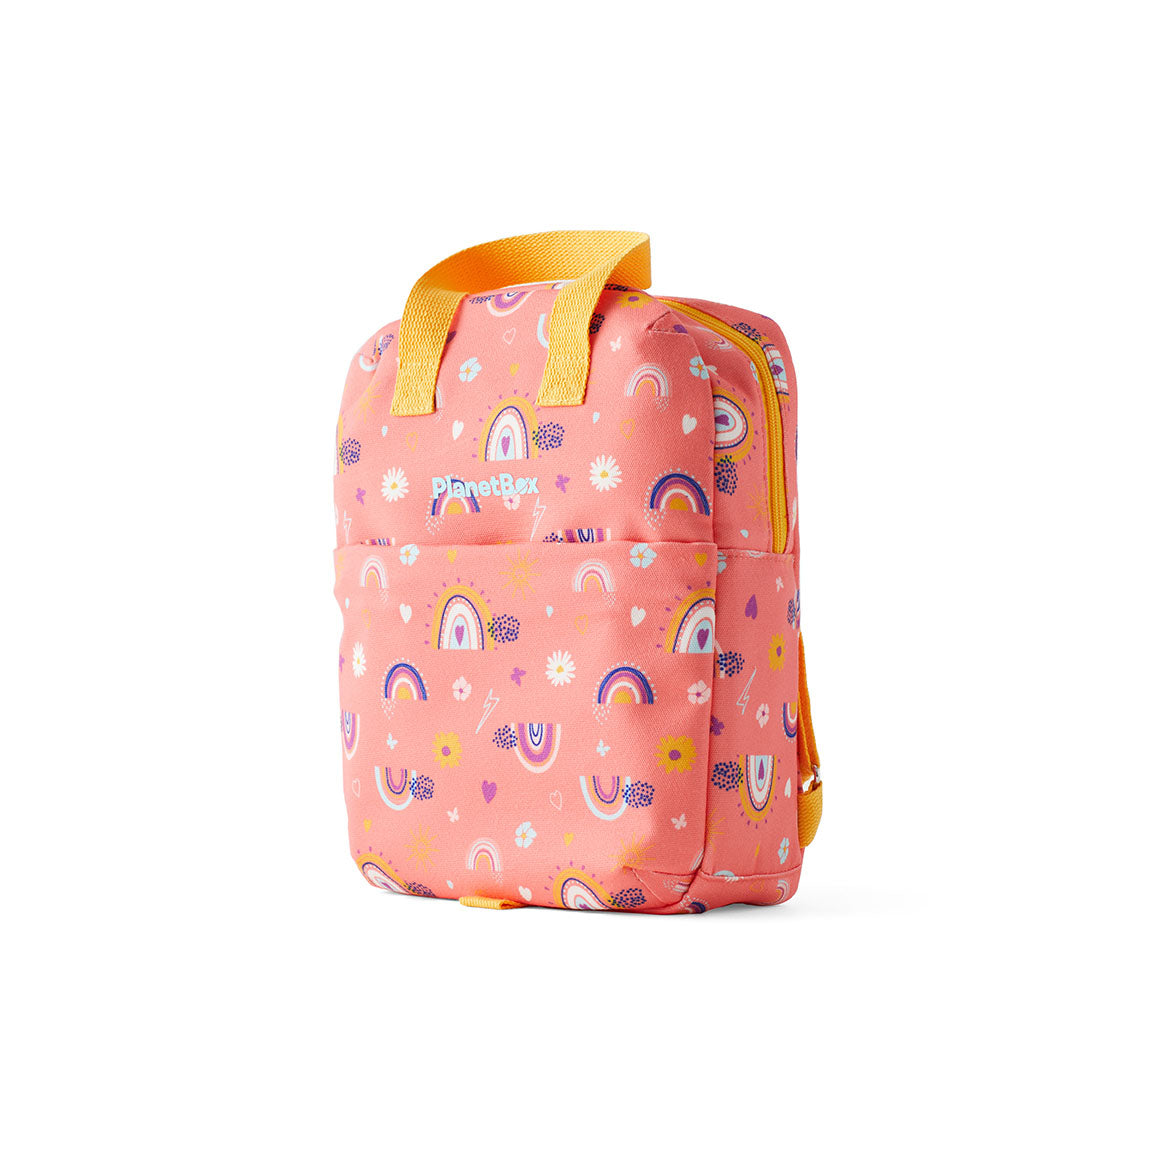 Lunch Tote Bag Peach Rainbow